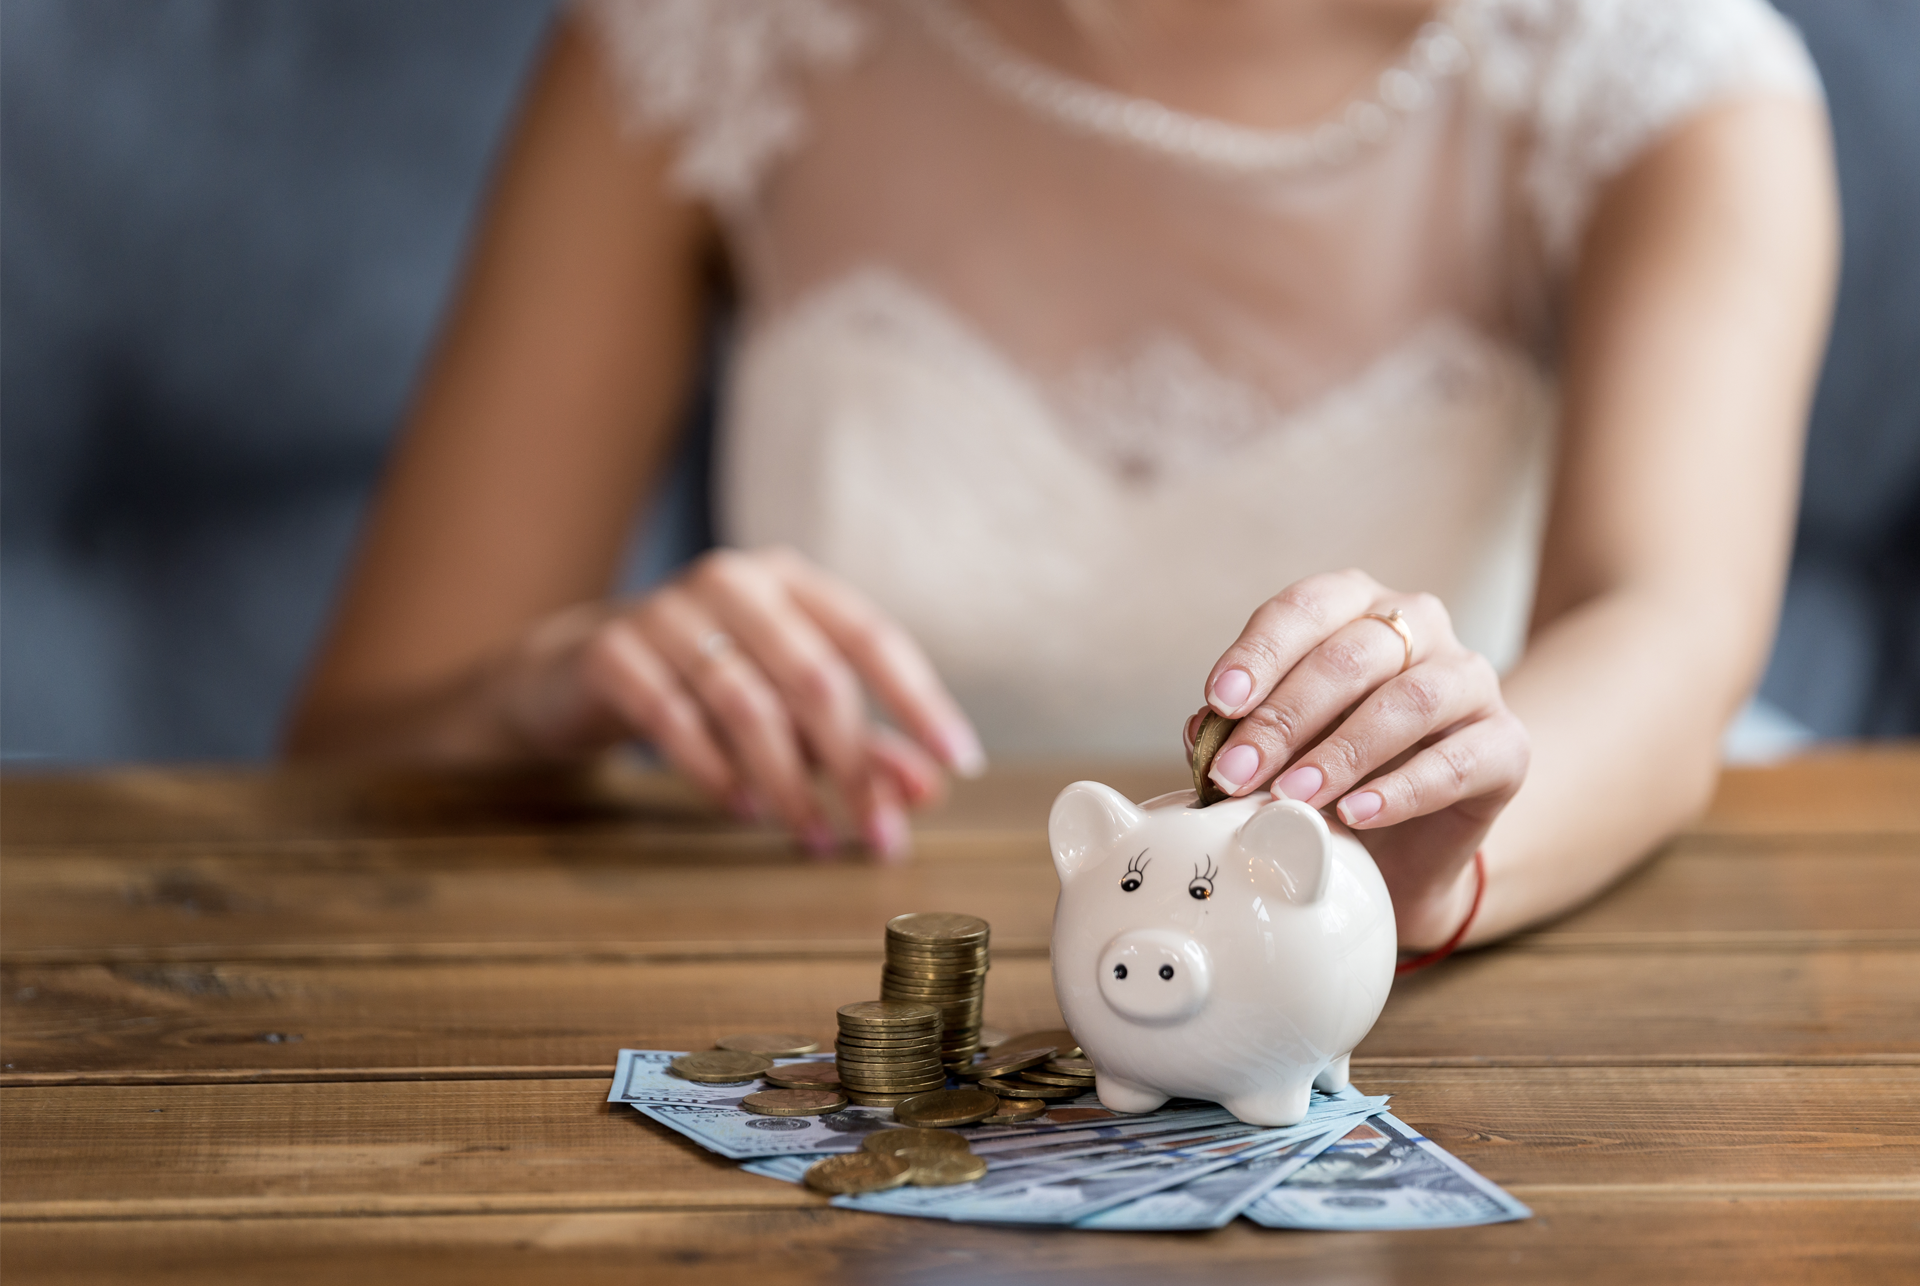 10 cuestiones financieras a tratar antes de casarte